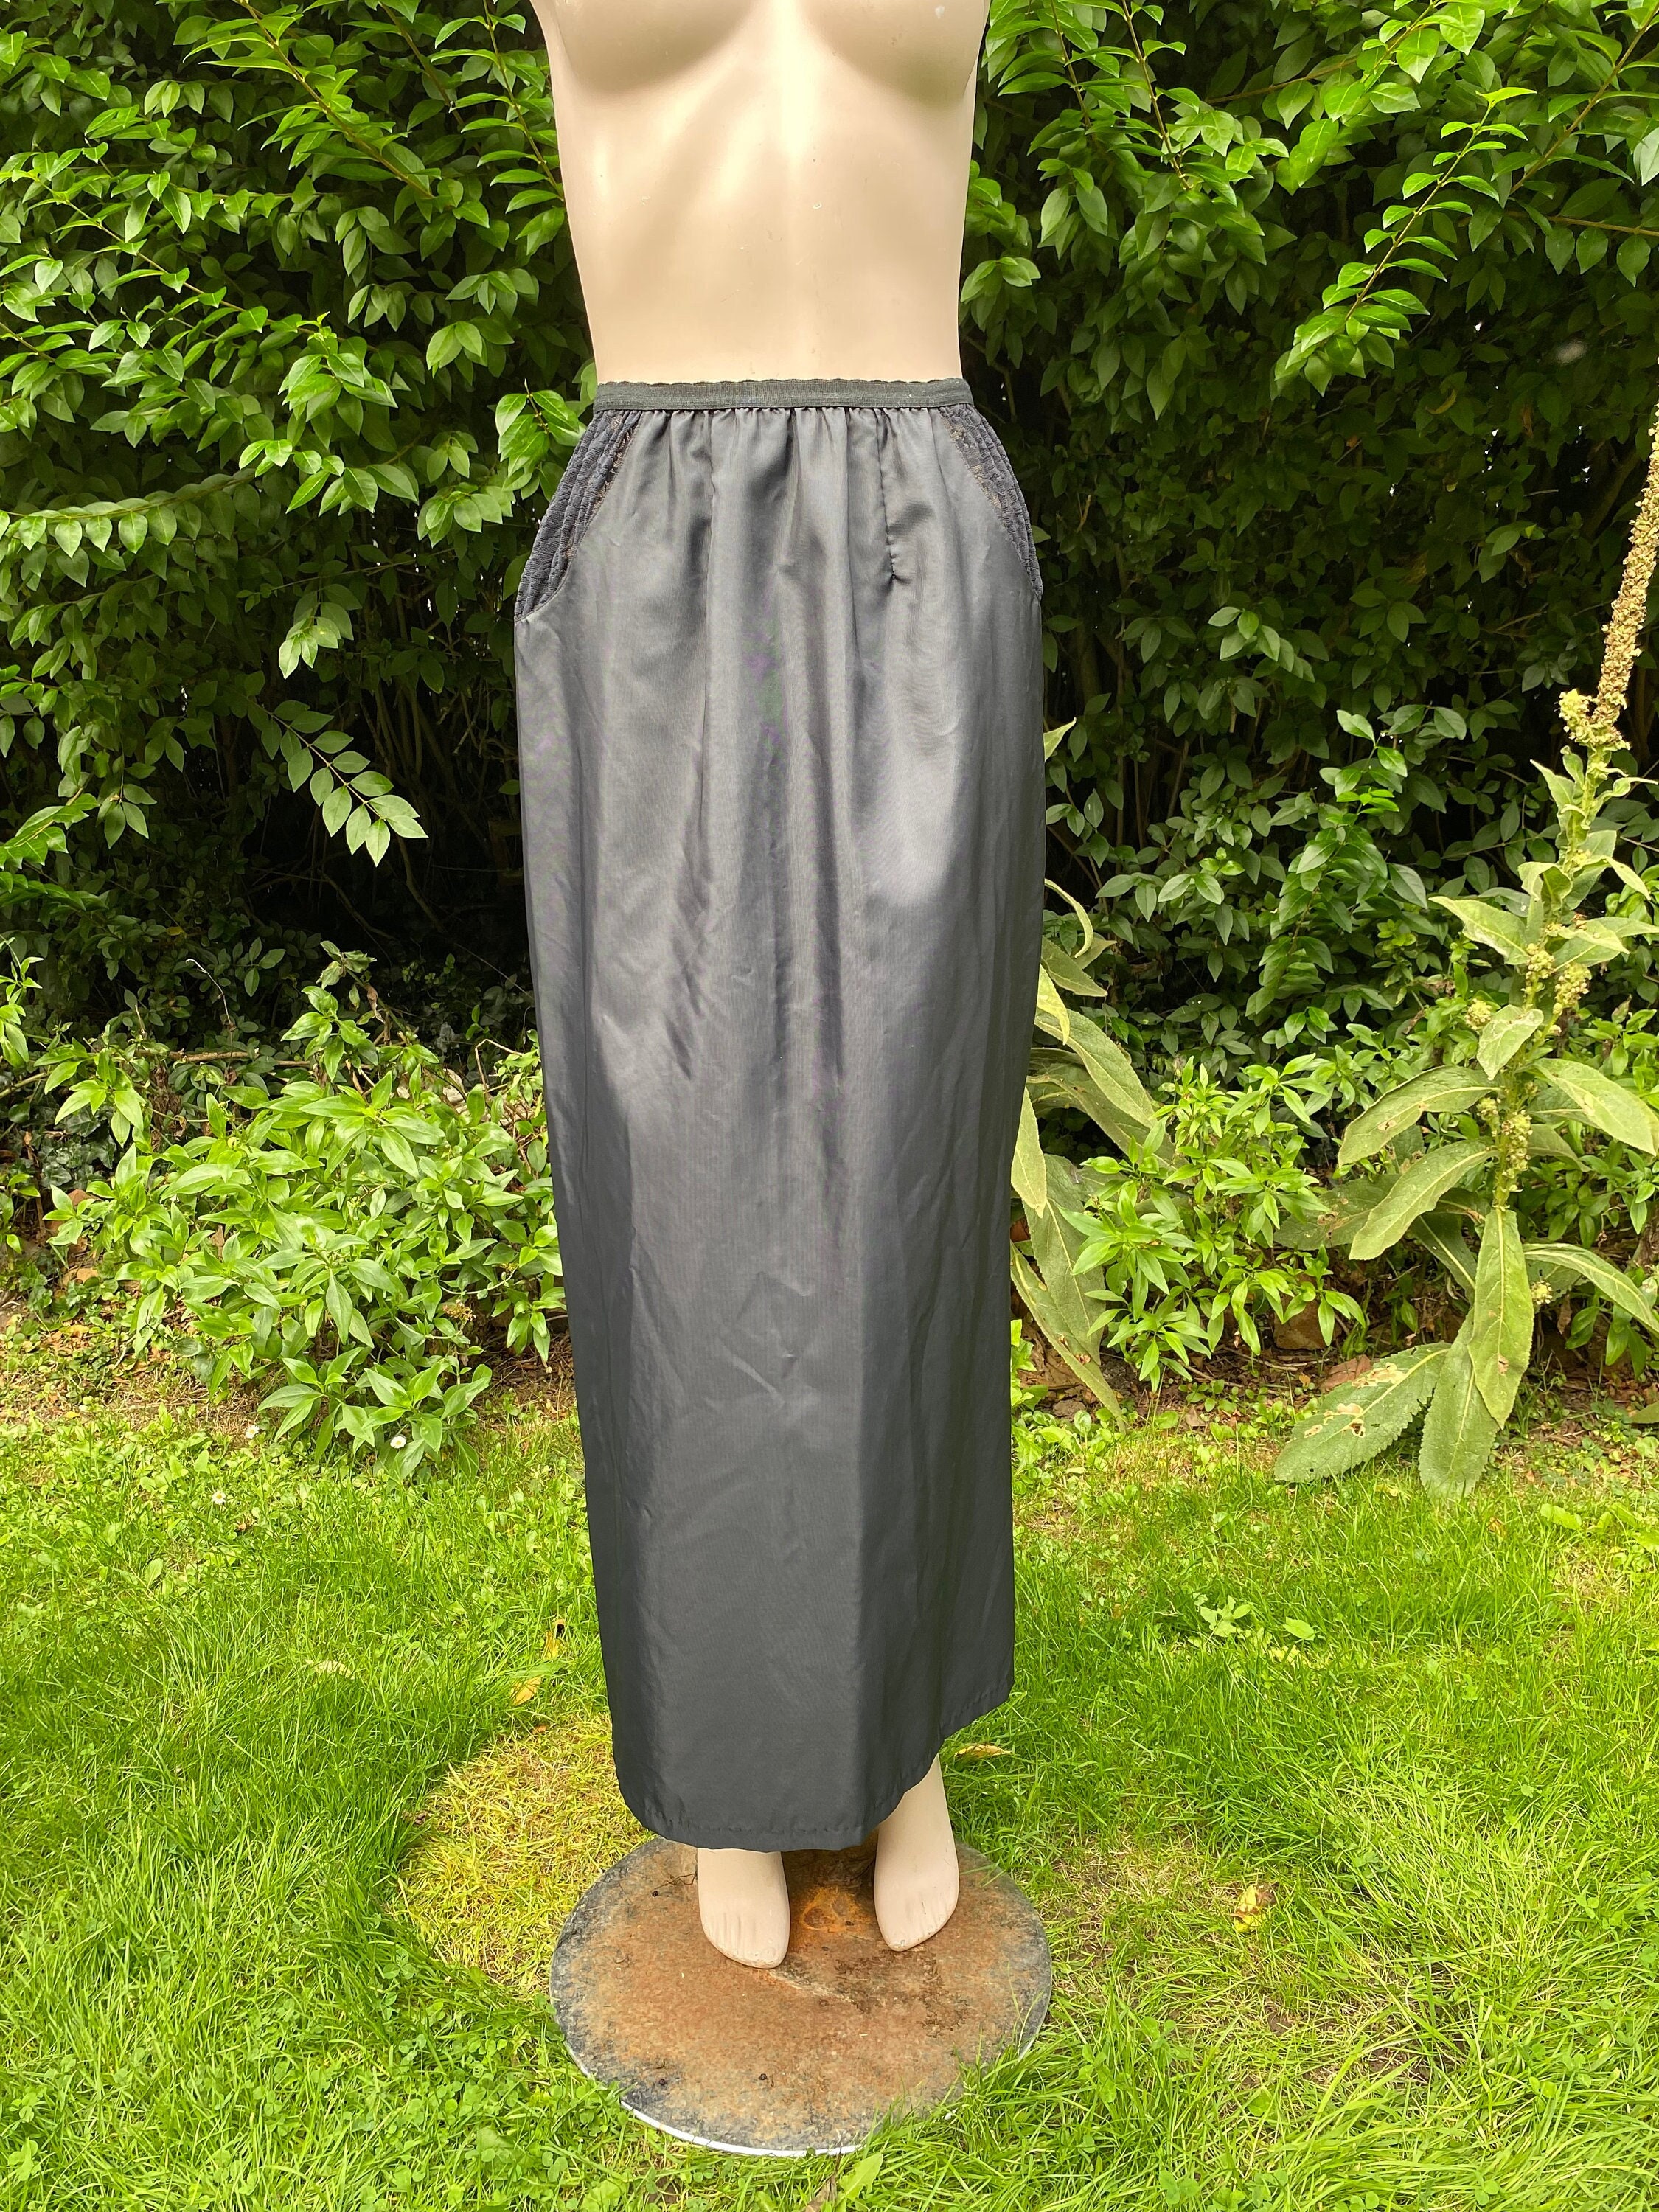 Vintage Full Length Black Waist Slip, Petticoat, Lingerie